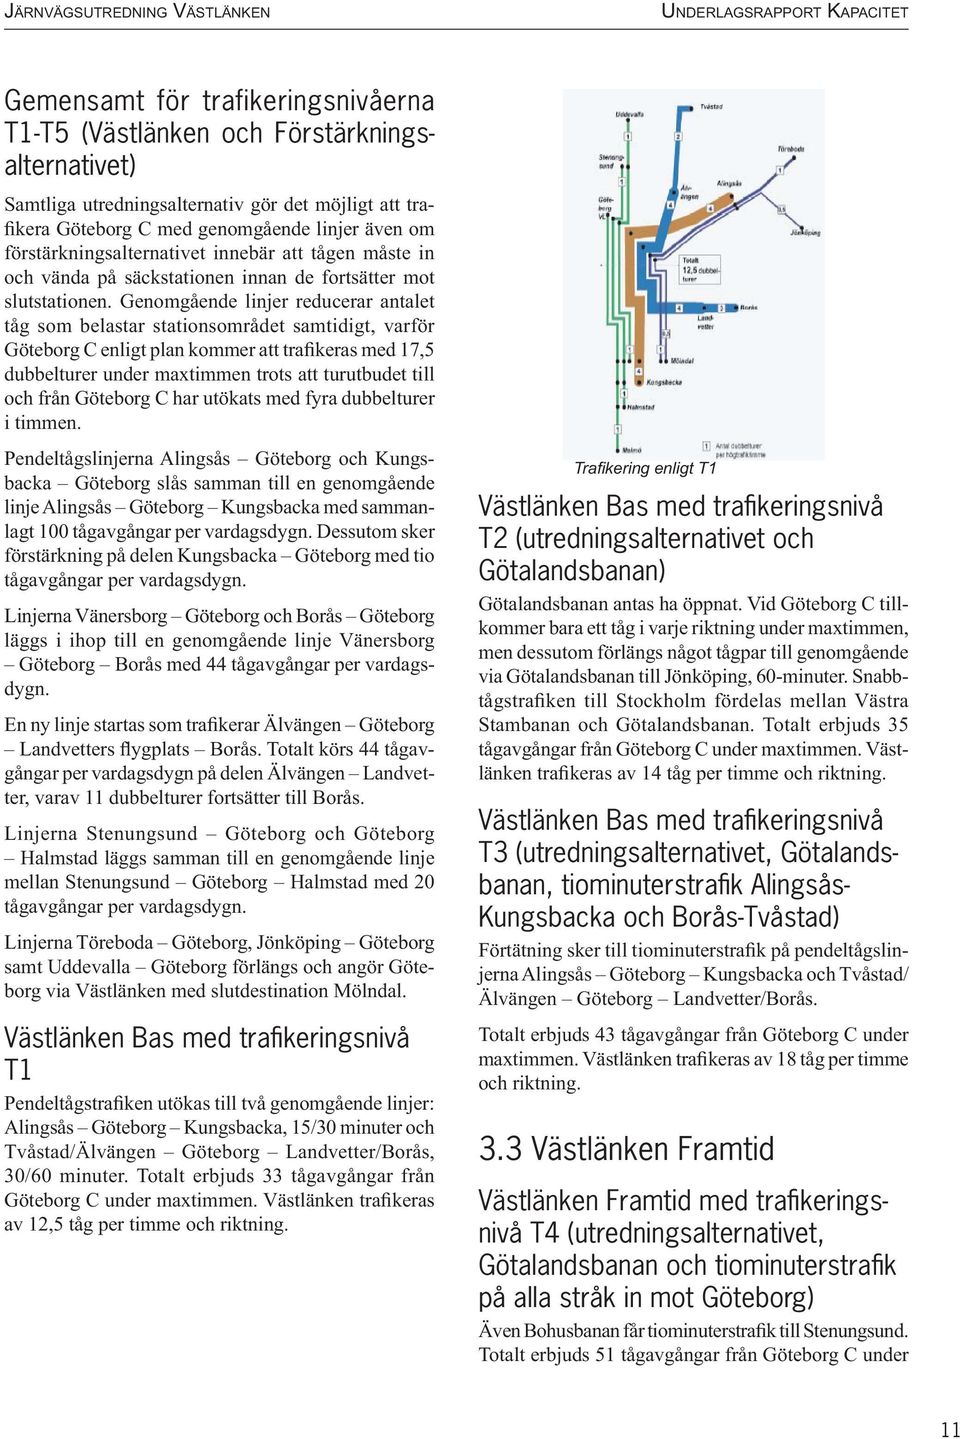 Genomgående linjer reducerar antalet tåg som belastar stationsområdet samtidigt, varför Göteborg C enligt plan kommer att trafikeras med 17,5 dubbelturer under maxtimmen trots att turutbudet till och